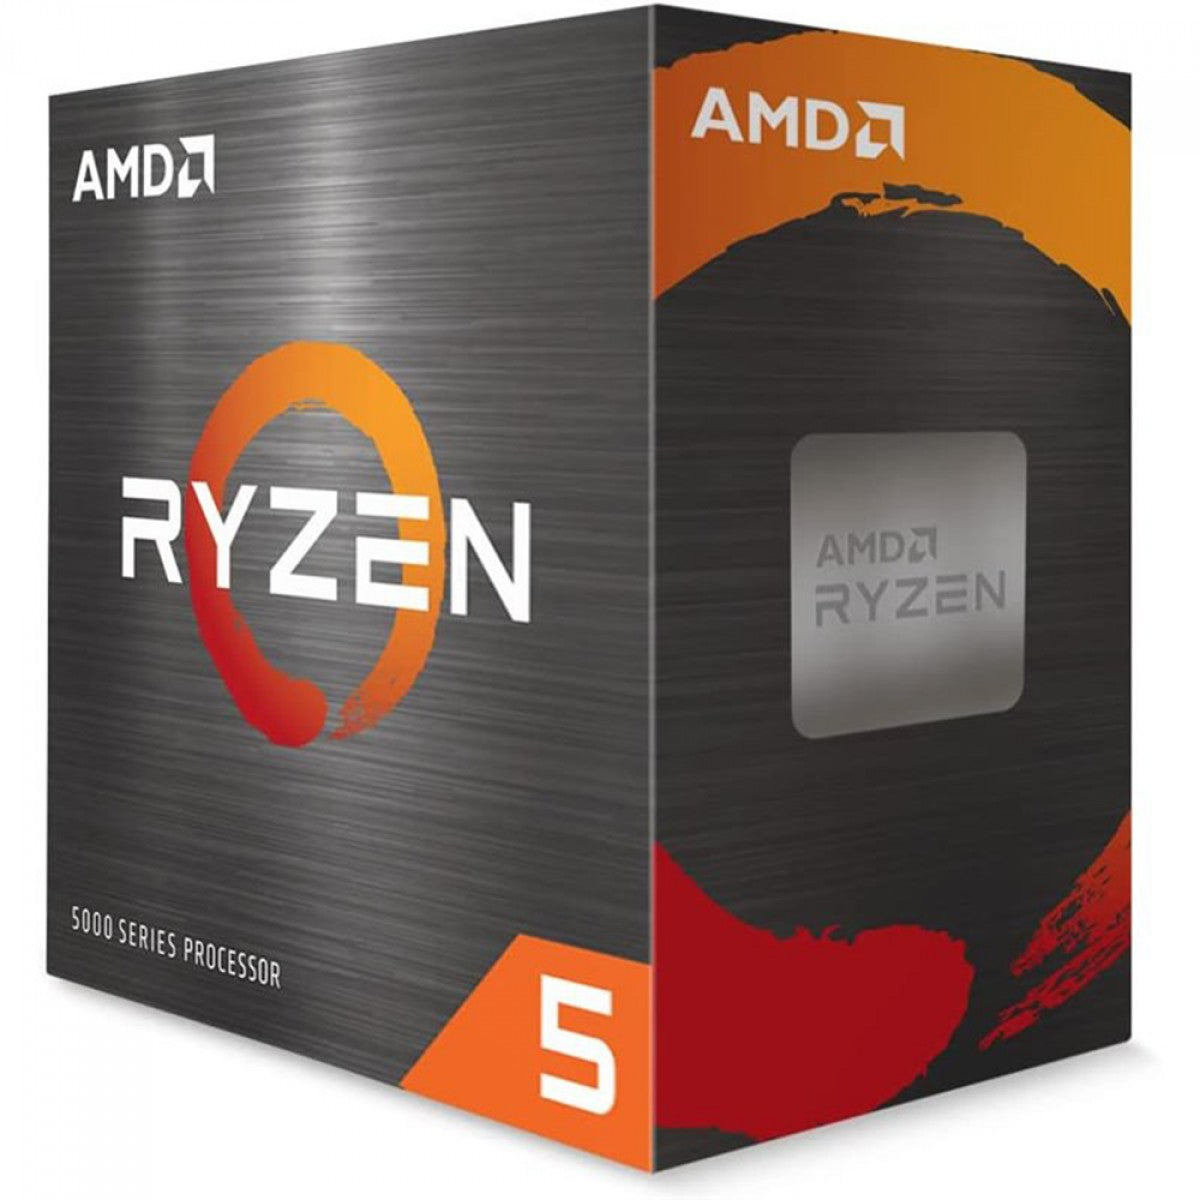 PC GAMER RYZEN 5 4600G, A520M, 16GB DE RAM, SSD 512GB, FONTE 600W